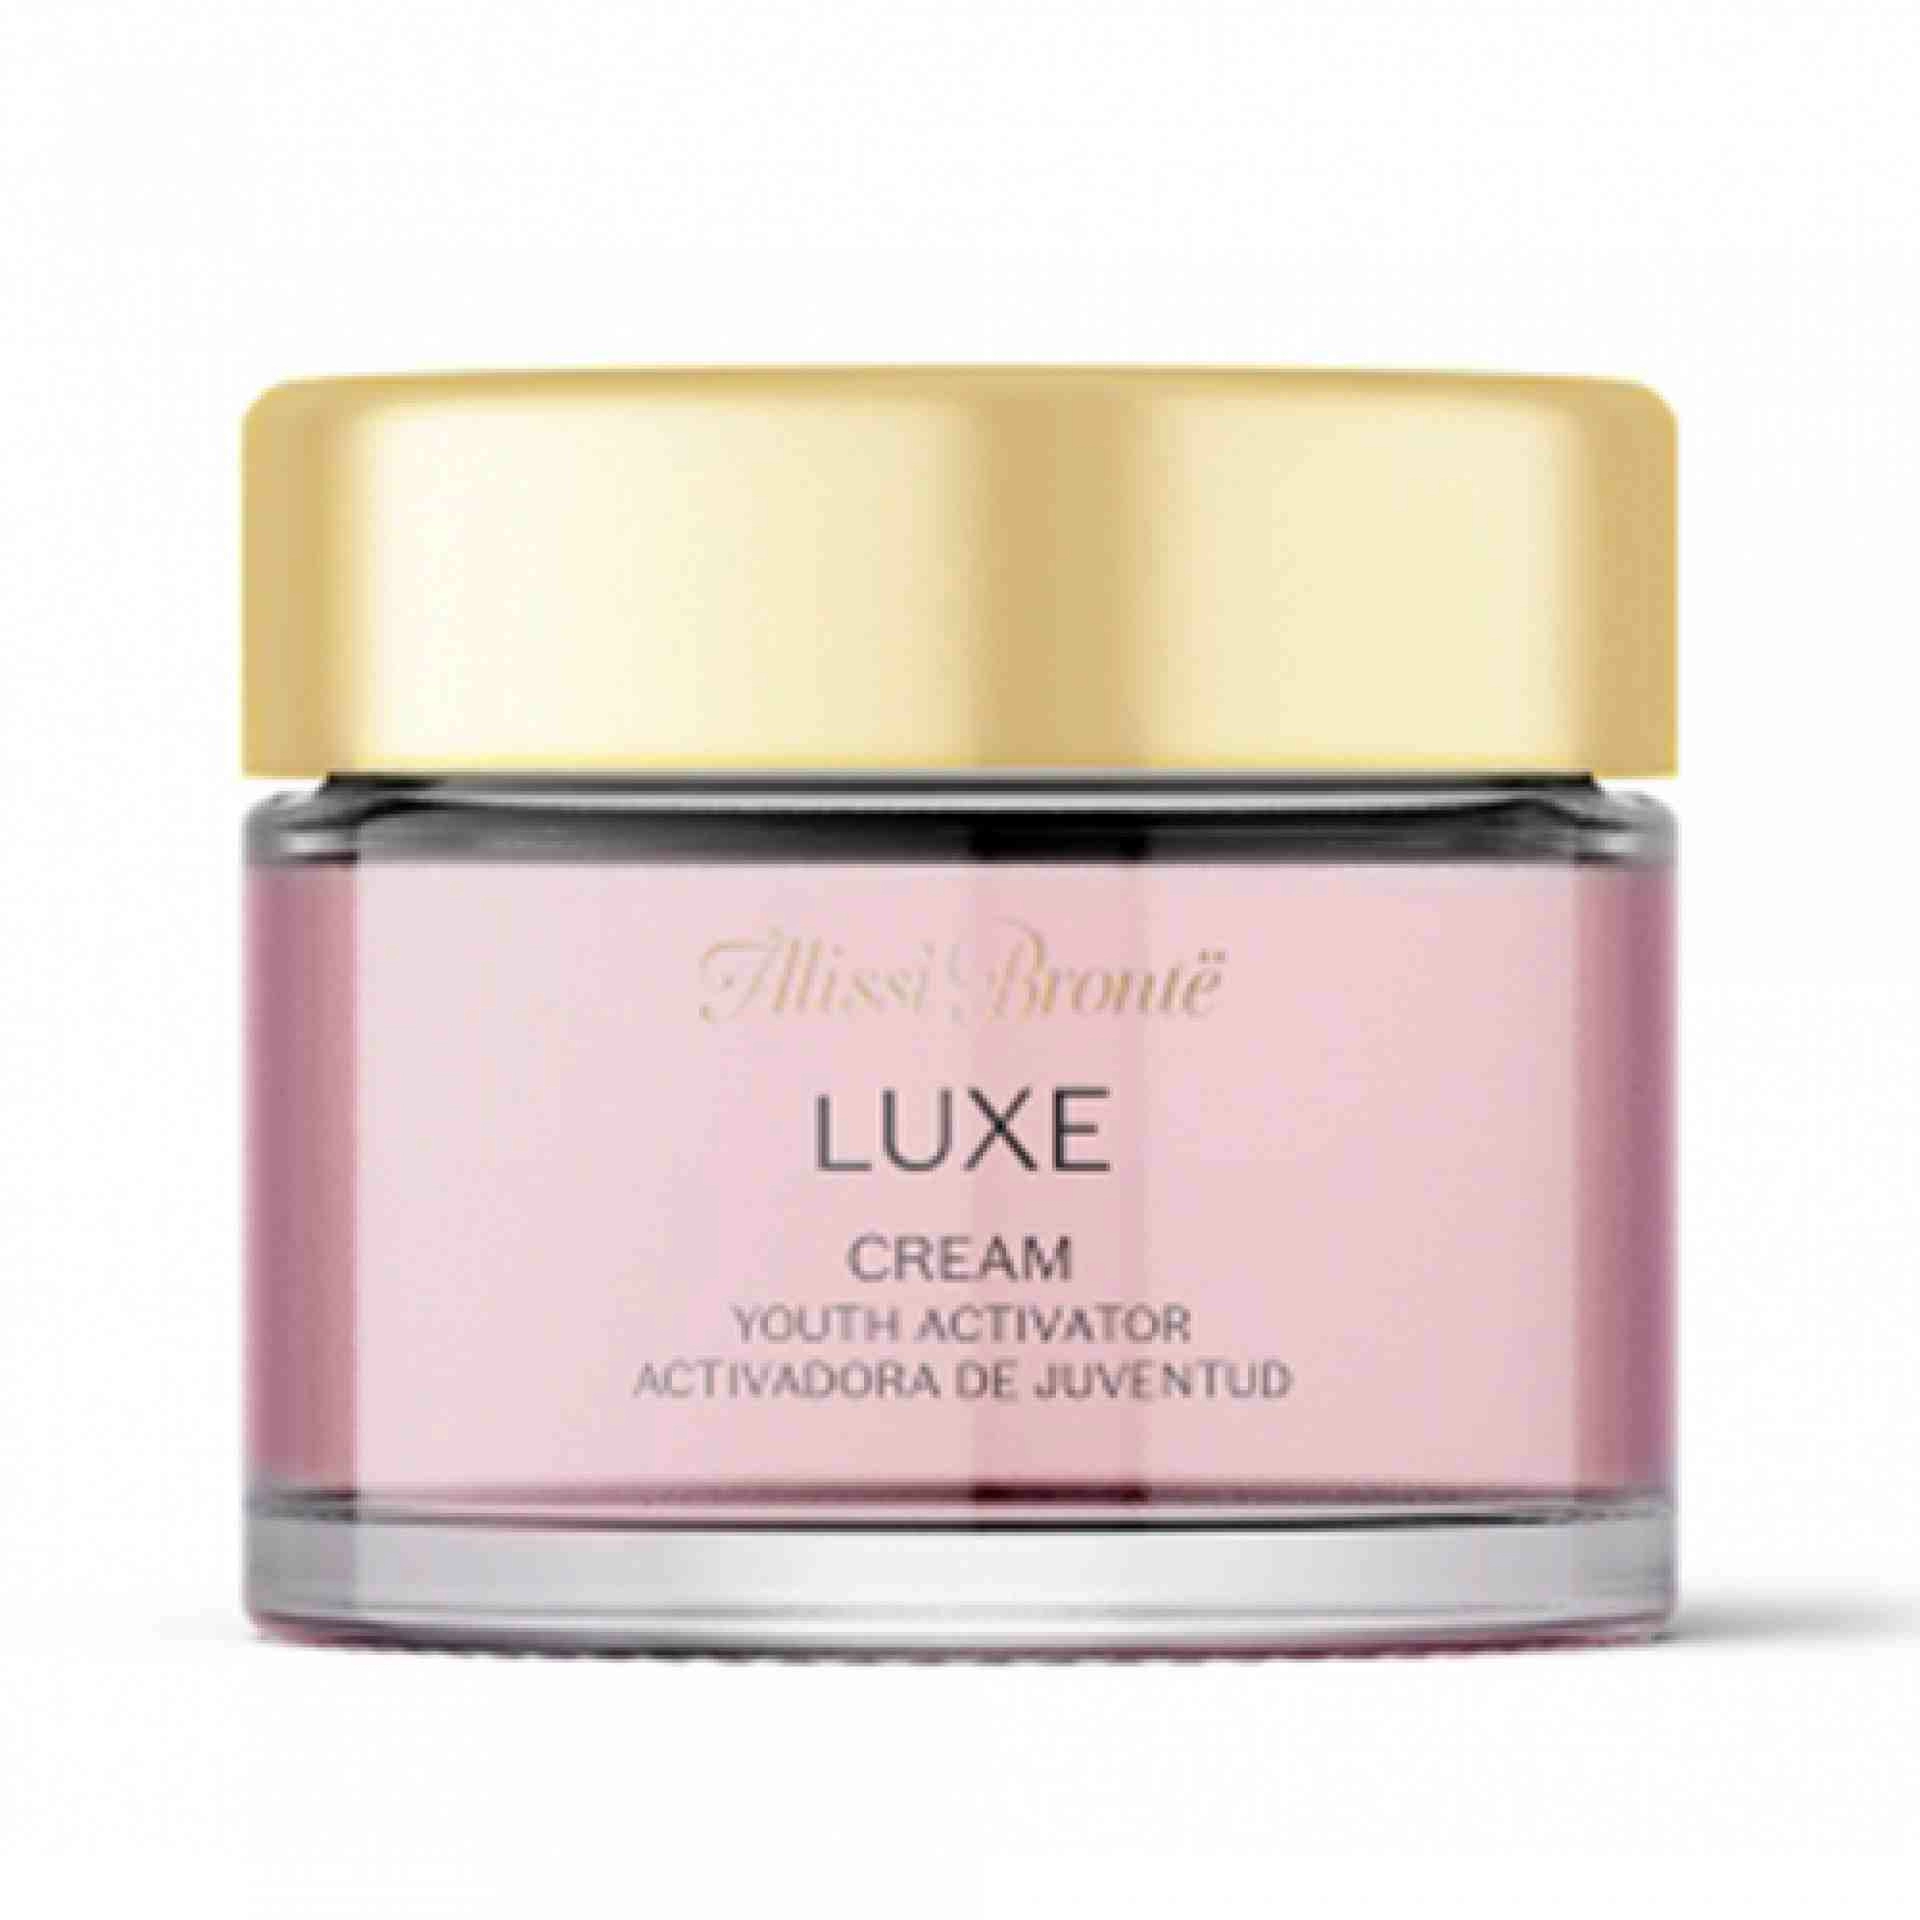 Cream I Crema rejuvenecedora 50ml - Luxe - Alissi Brontë ®